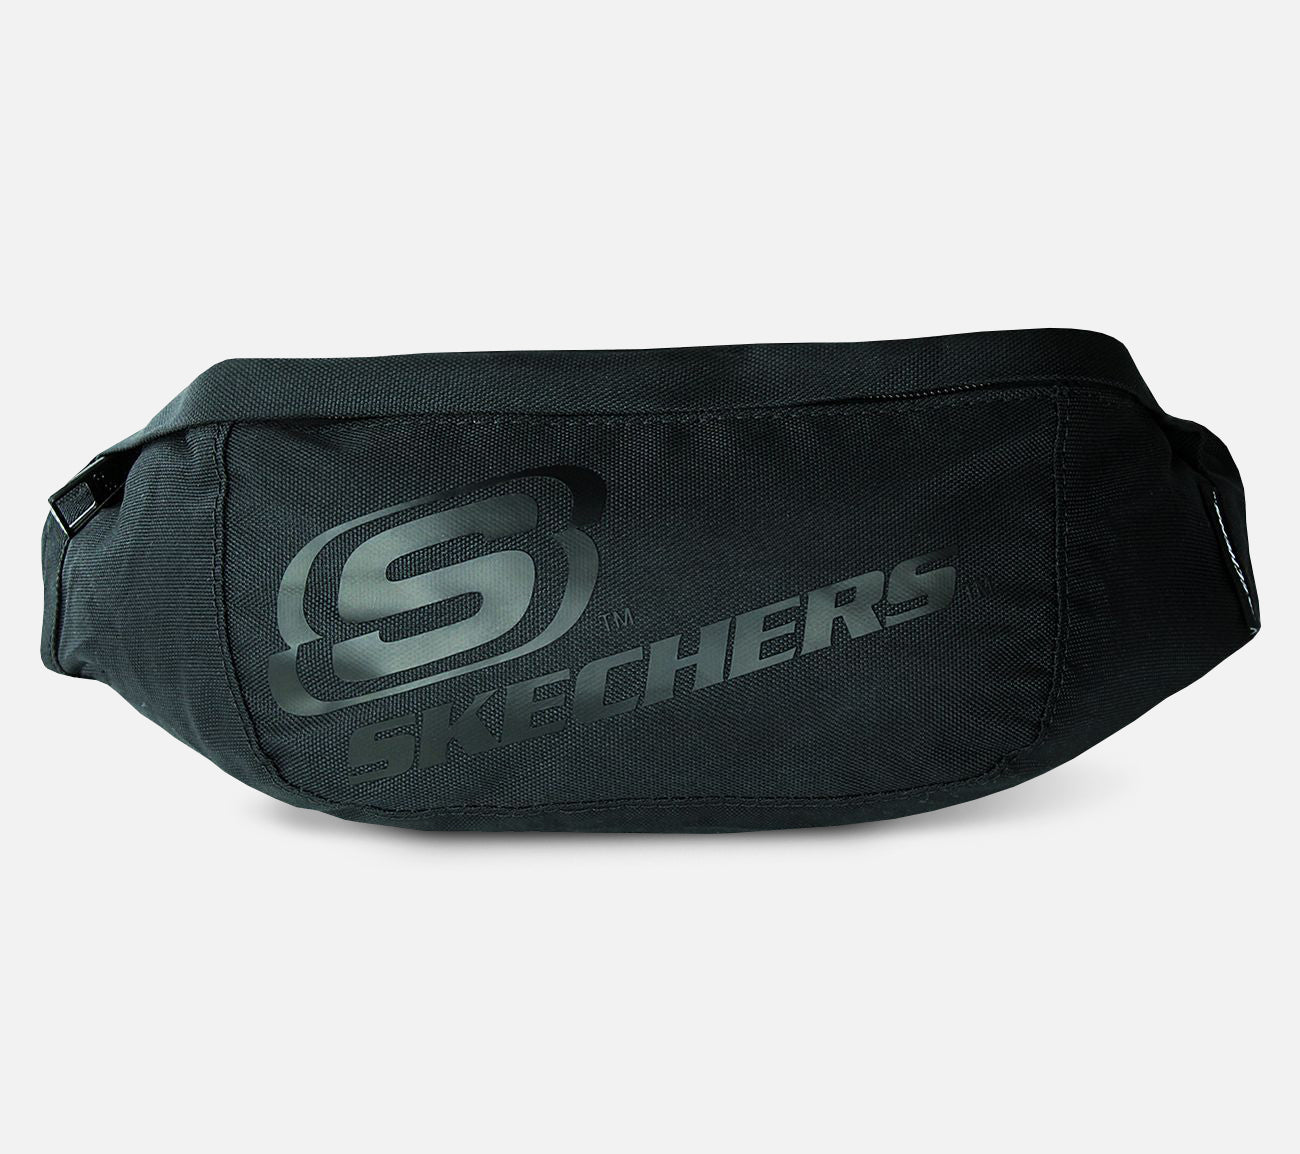 Skechers-vyötärölaukku Bags Skechers